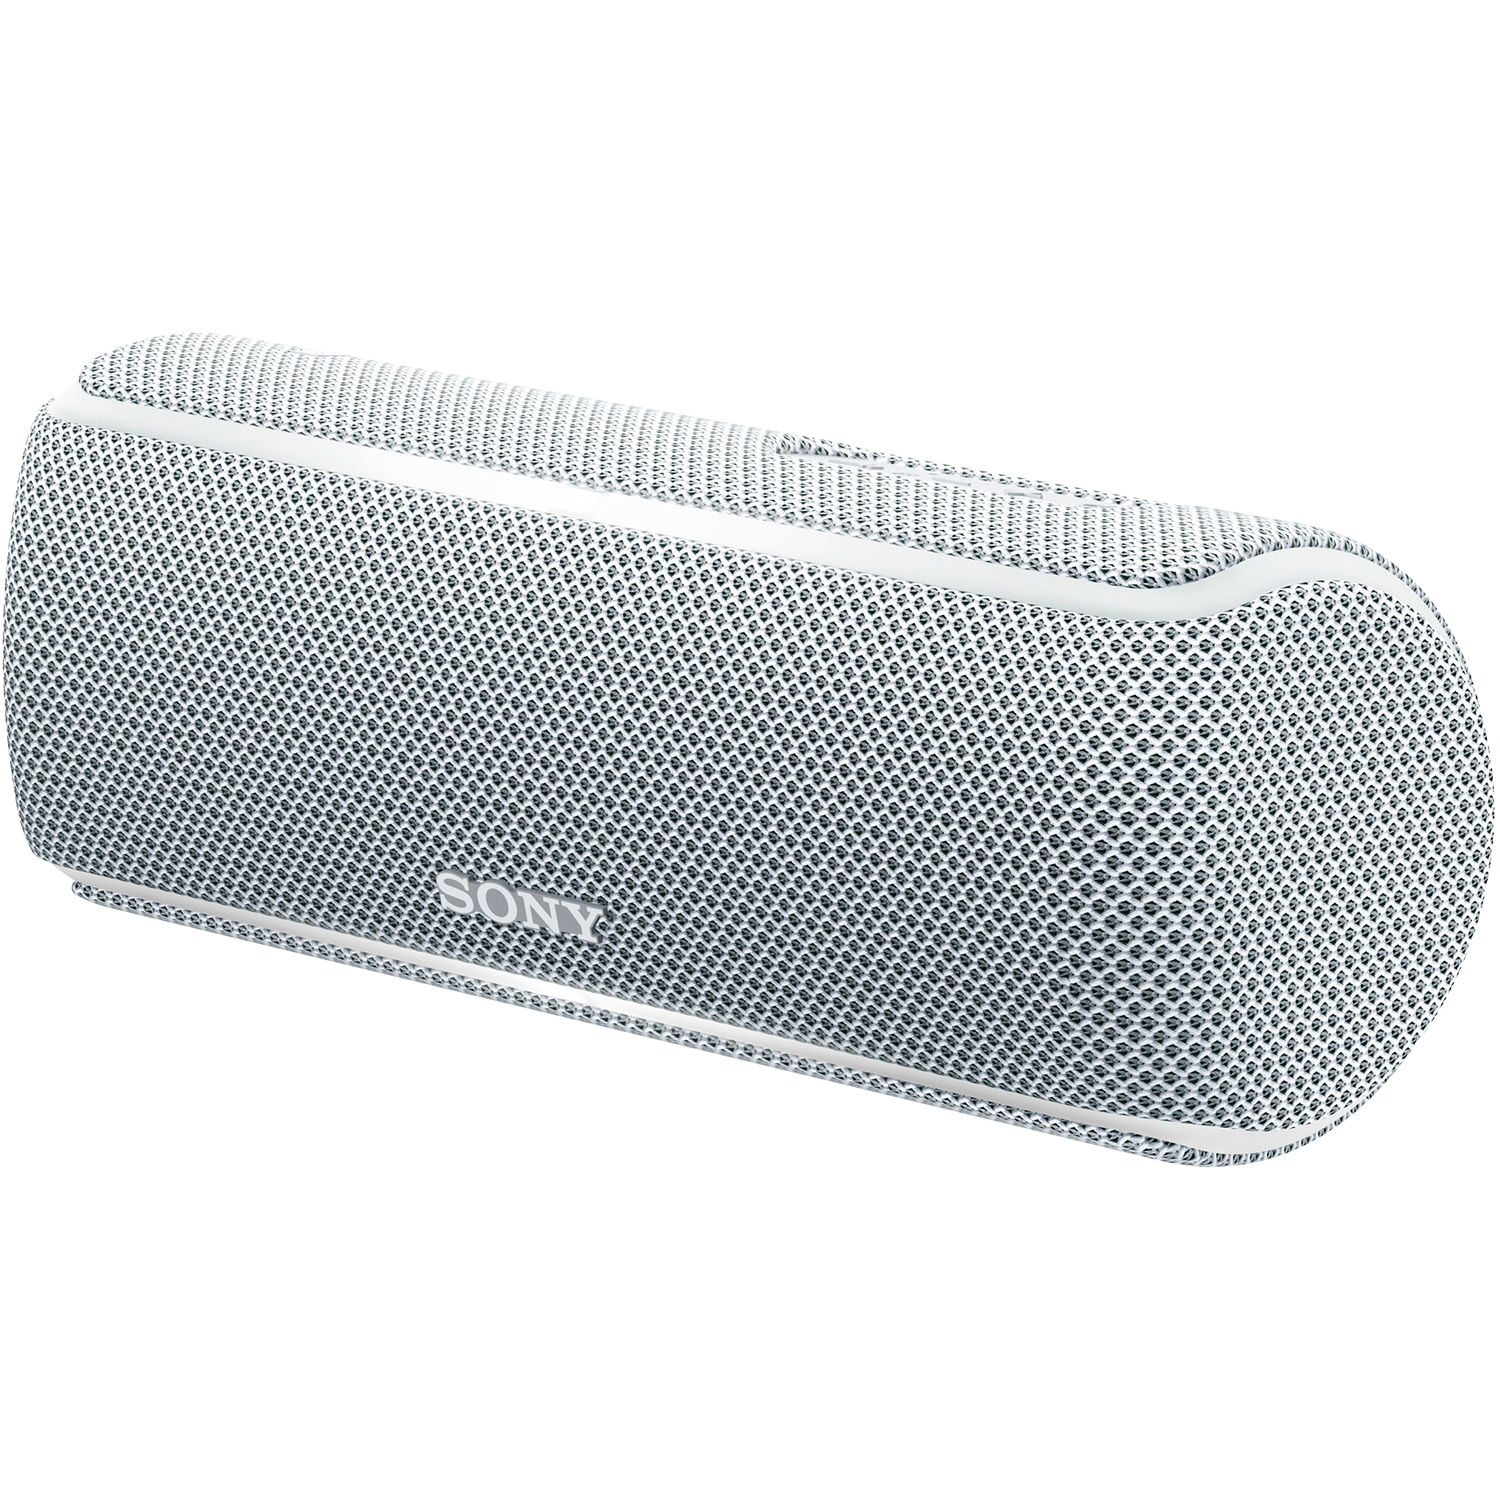 Sony SRS-XB21 bluetooth-hangszóró (fehér) - Kiegészítők Hangfal